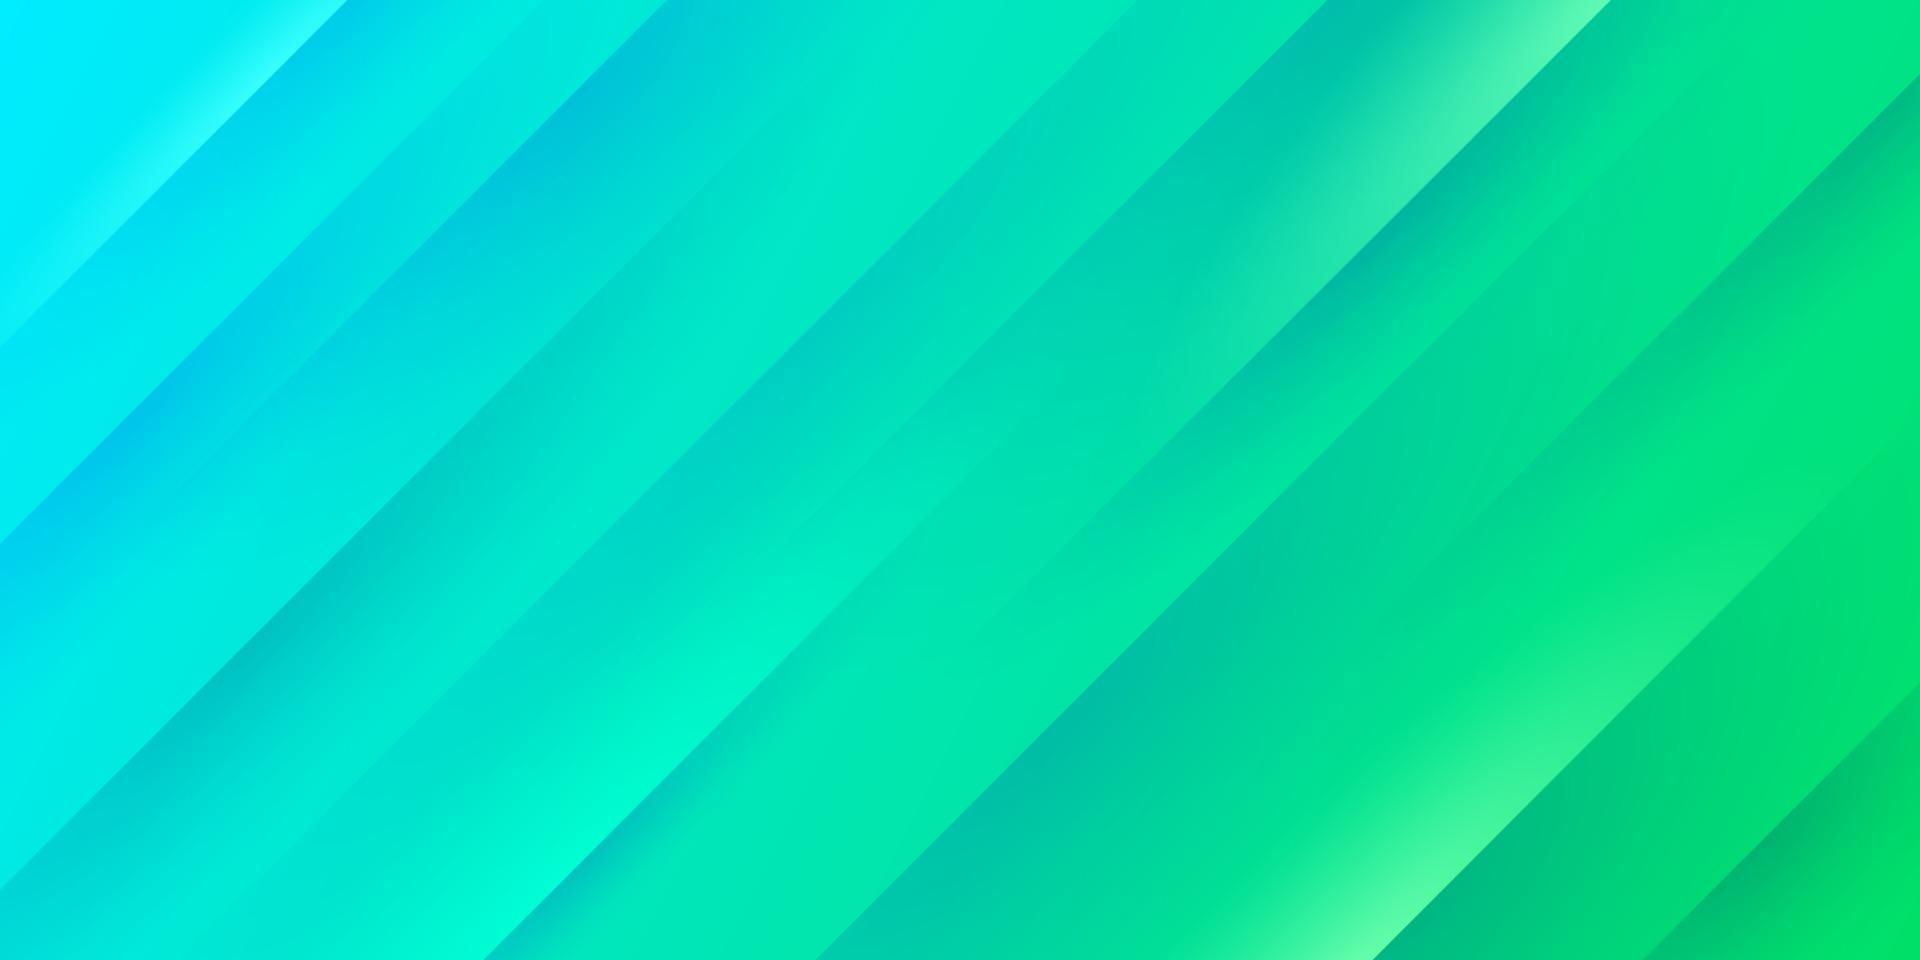 abstracte lichtblauwe en groene gradiëntachtergrond met diagonale streeplijnen en textuur. modern en eenvoudig pastelbannerontwerp. u kunt gebruiken voor bedrijfspresentatie, poster, sjabloon. vectoreps10 vector